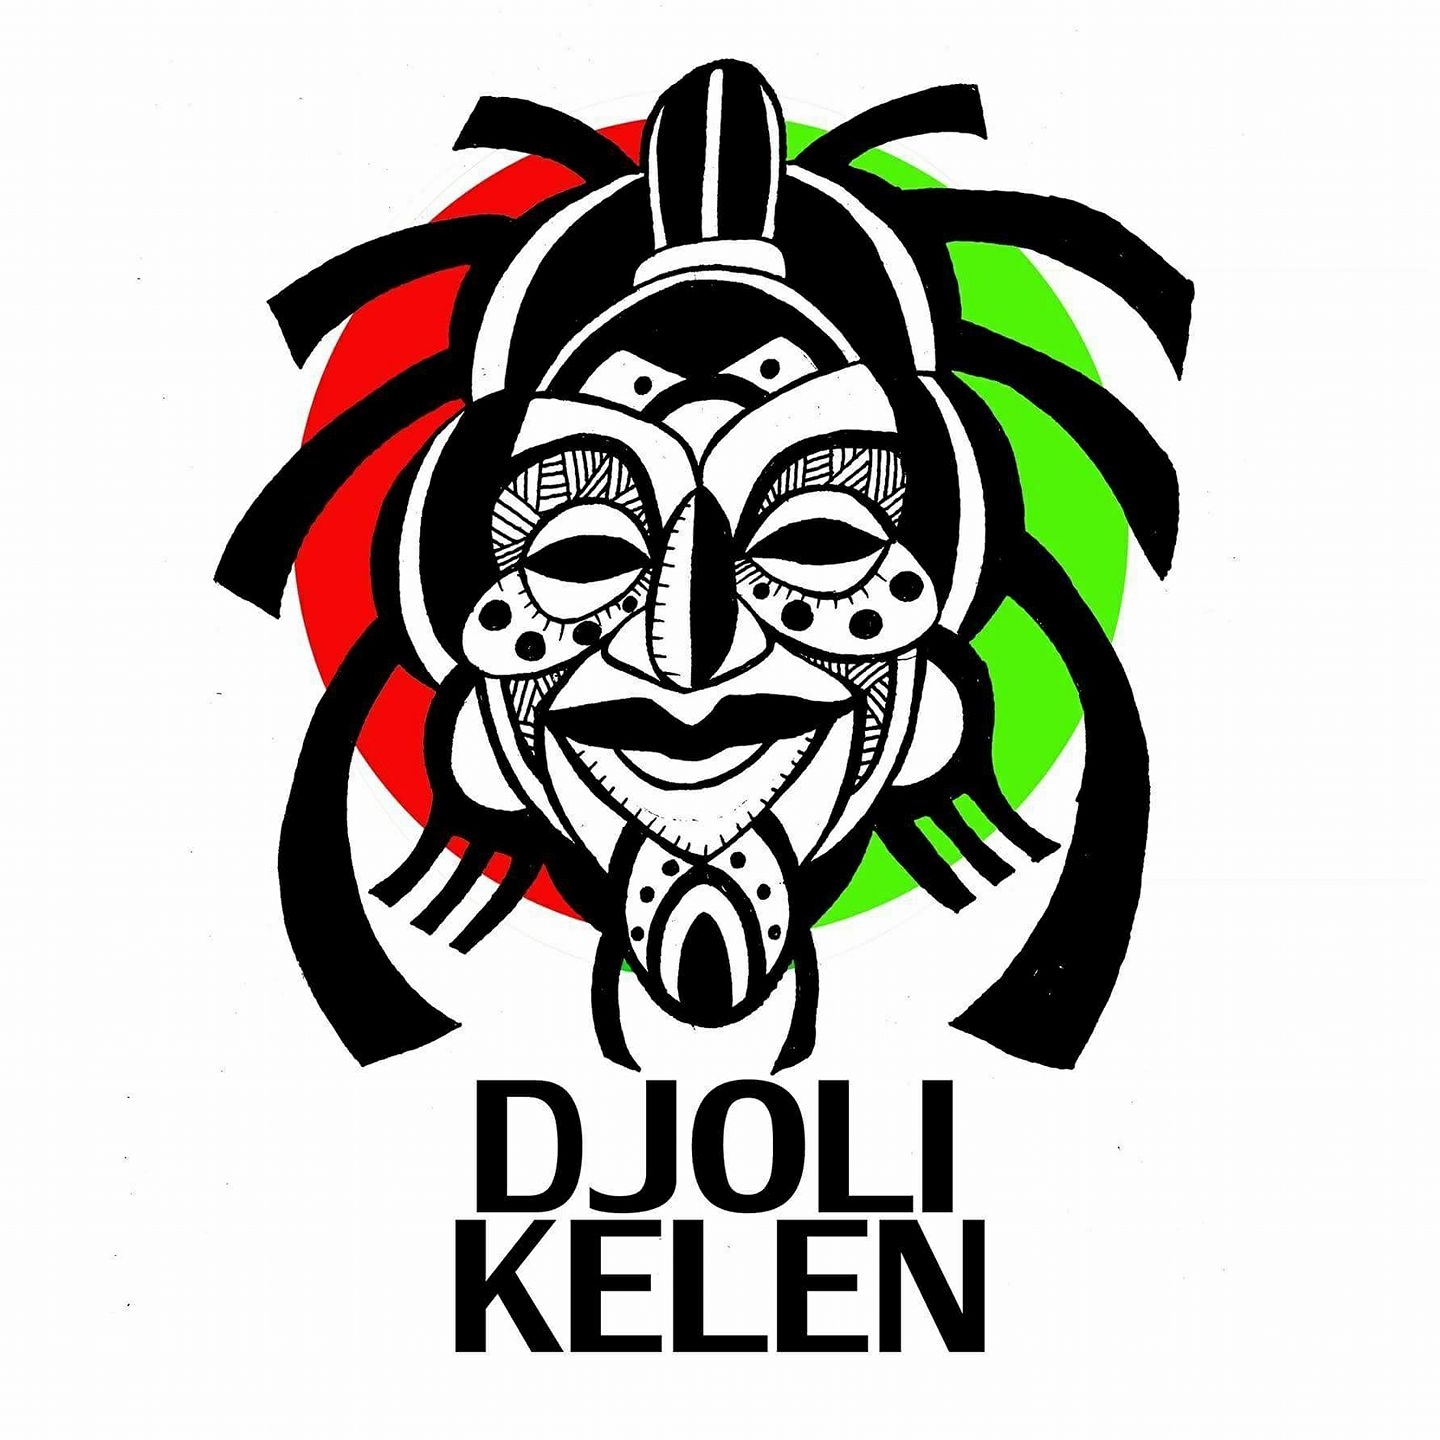 Djoli Kelen, Inc.